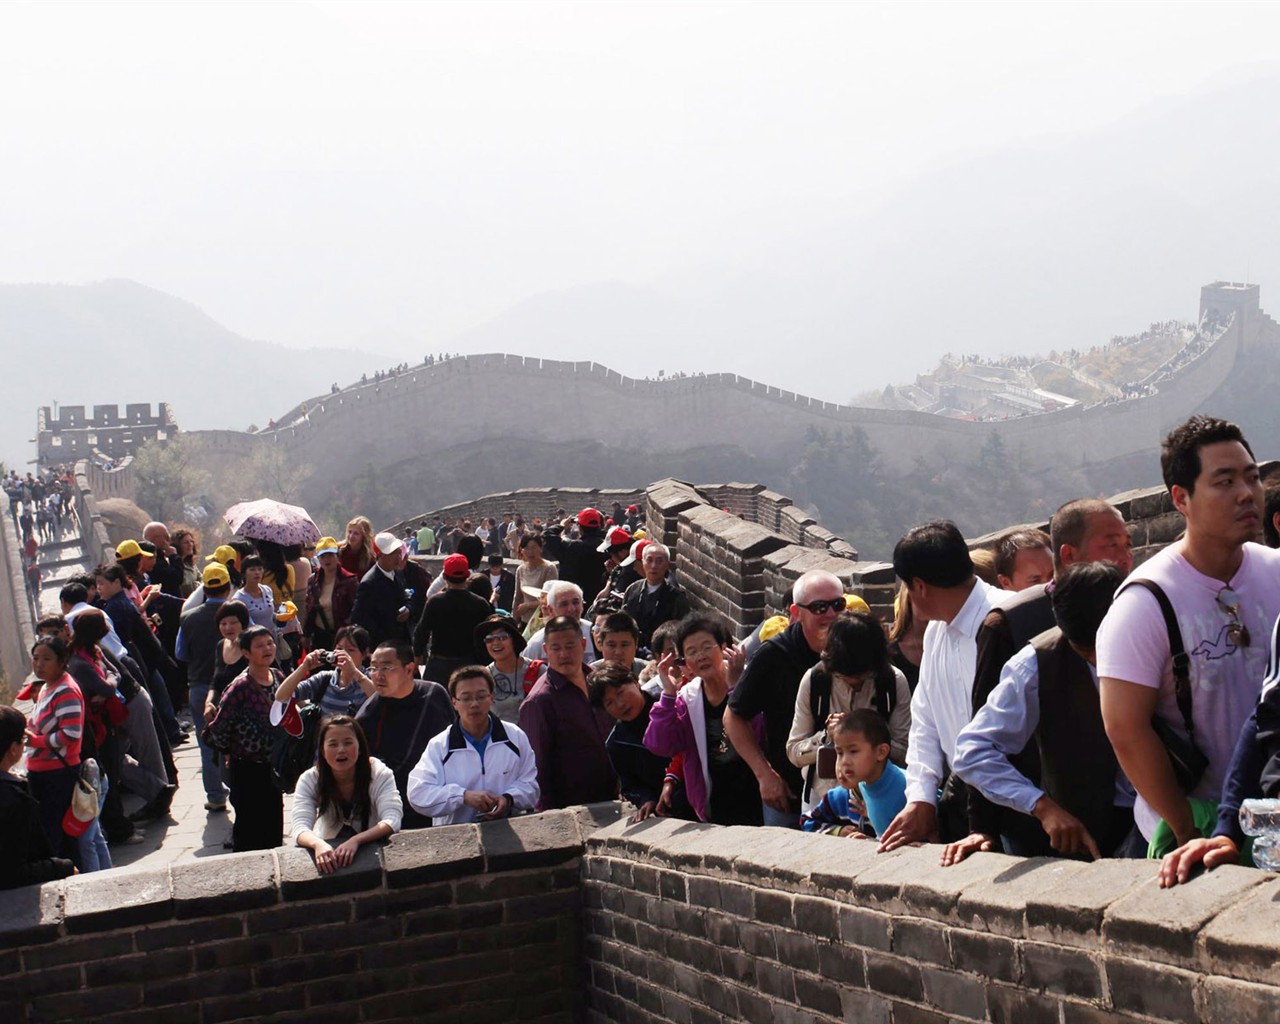 Beijing Tour - Badaling Great Wall (ggc works) #2 - 1280x1024